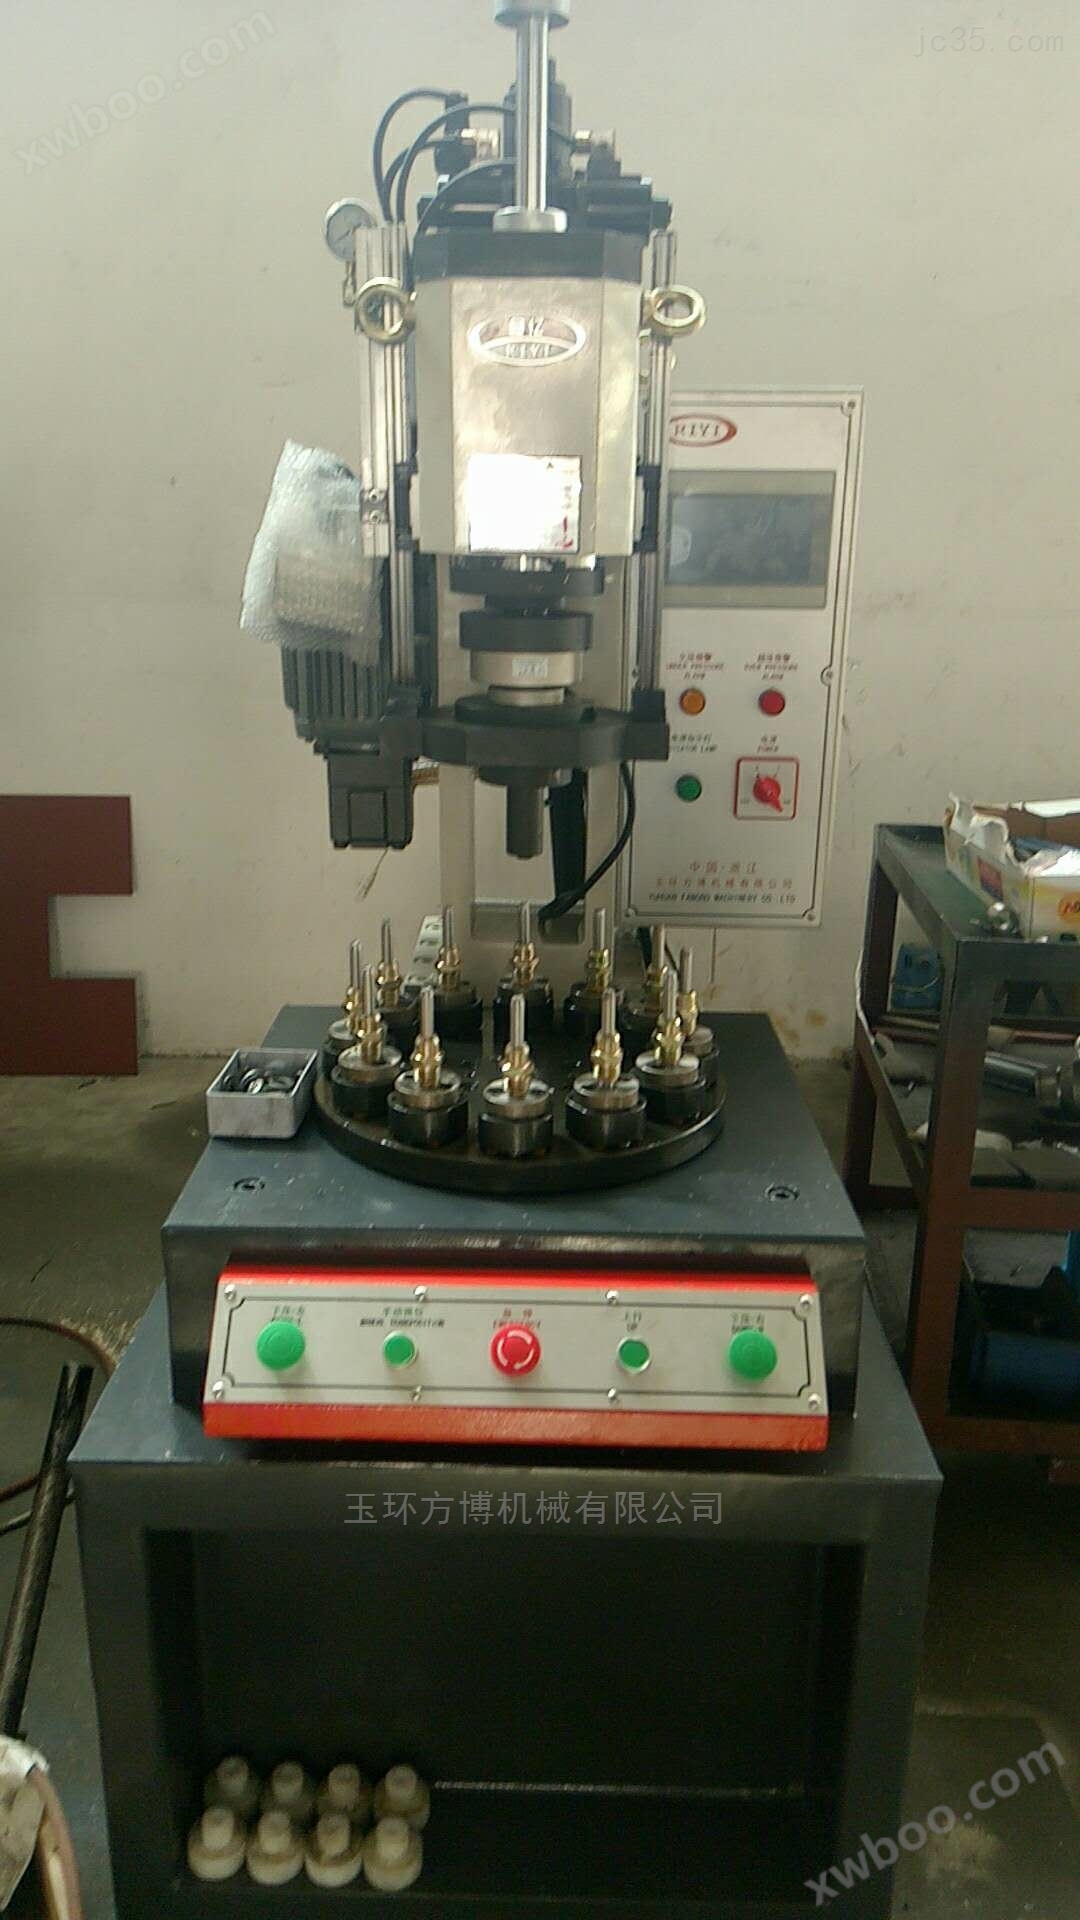 多工位单柱液压机 六工位油压机